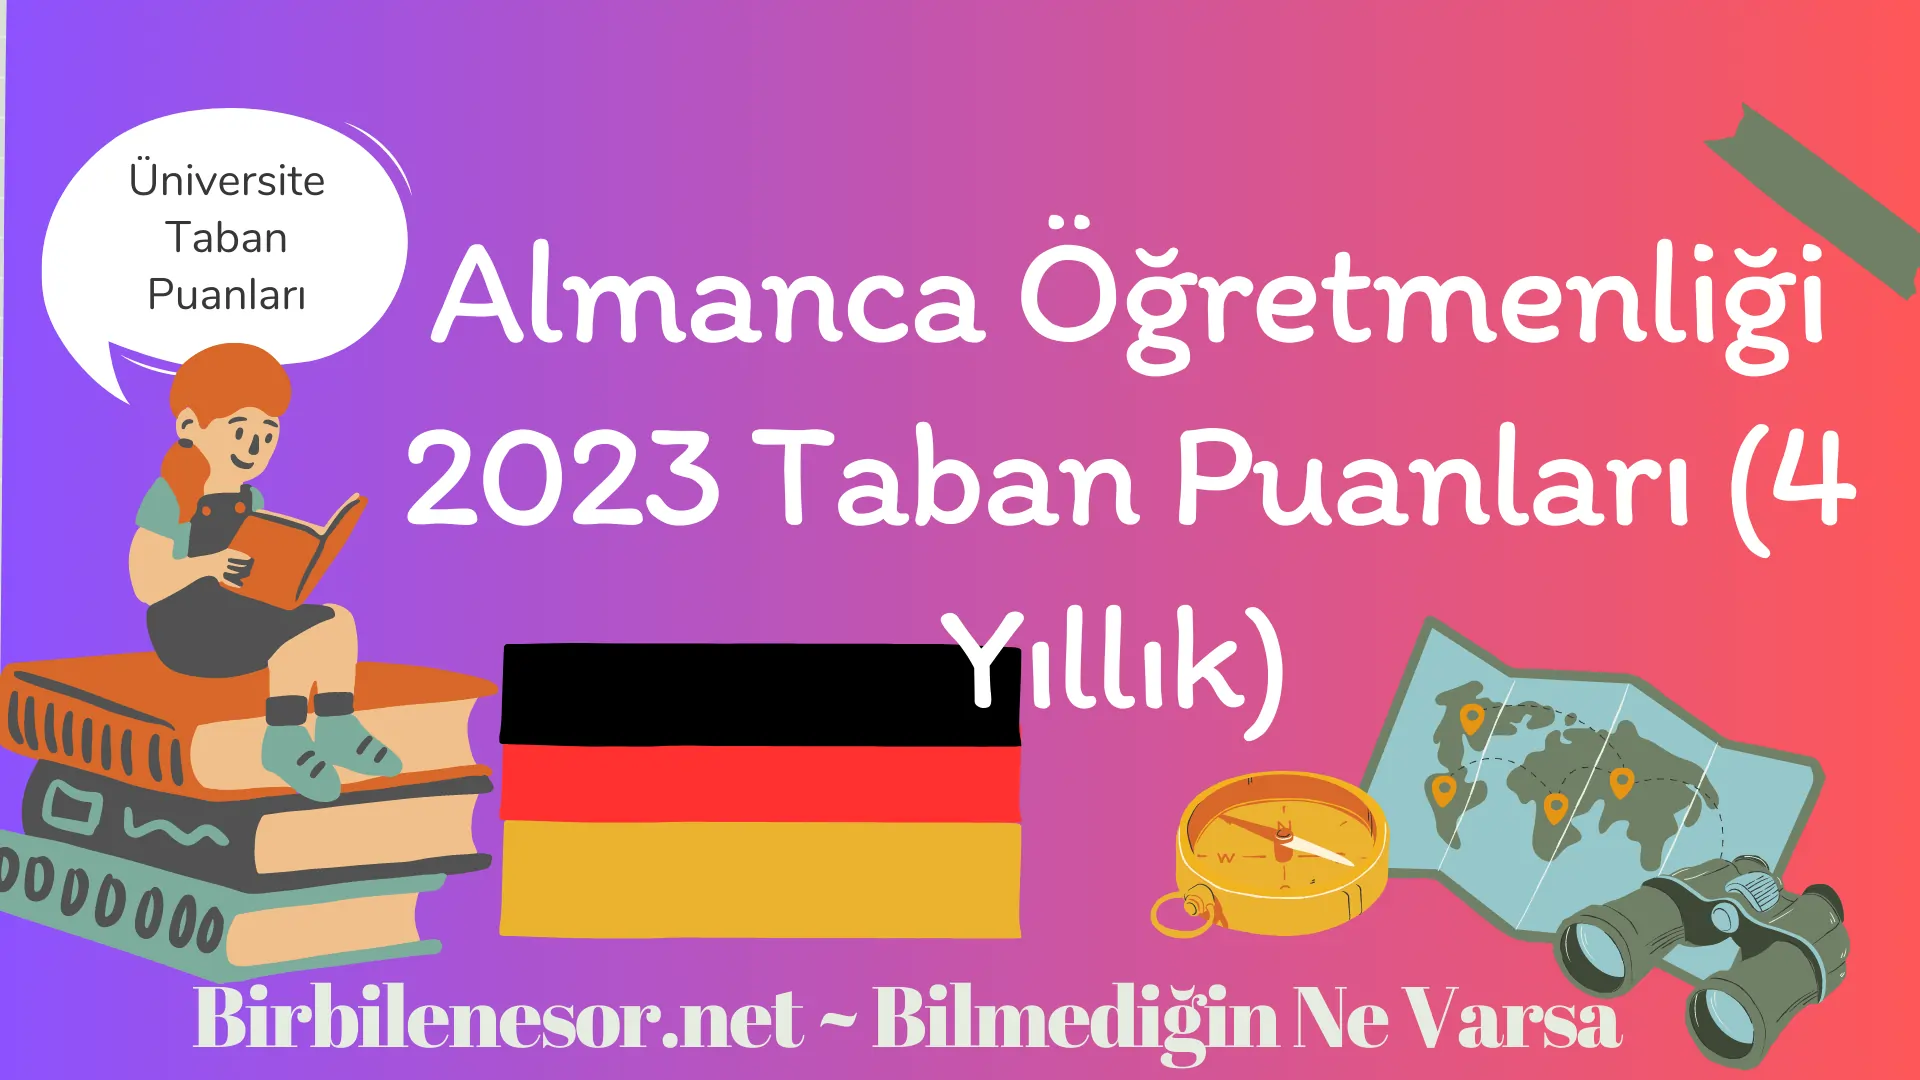 Almanca Öğretmenliği 2023 Taban Puanları (4 Yıllık) 